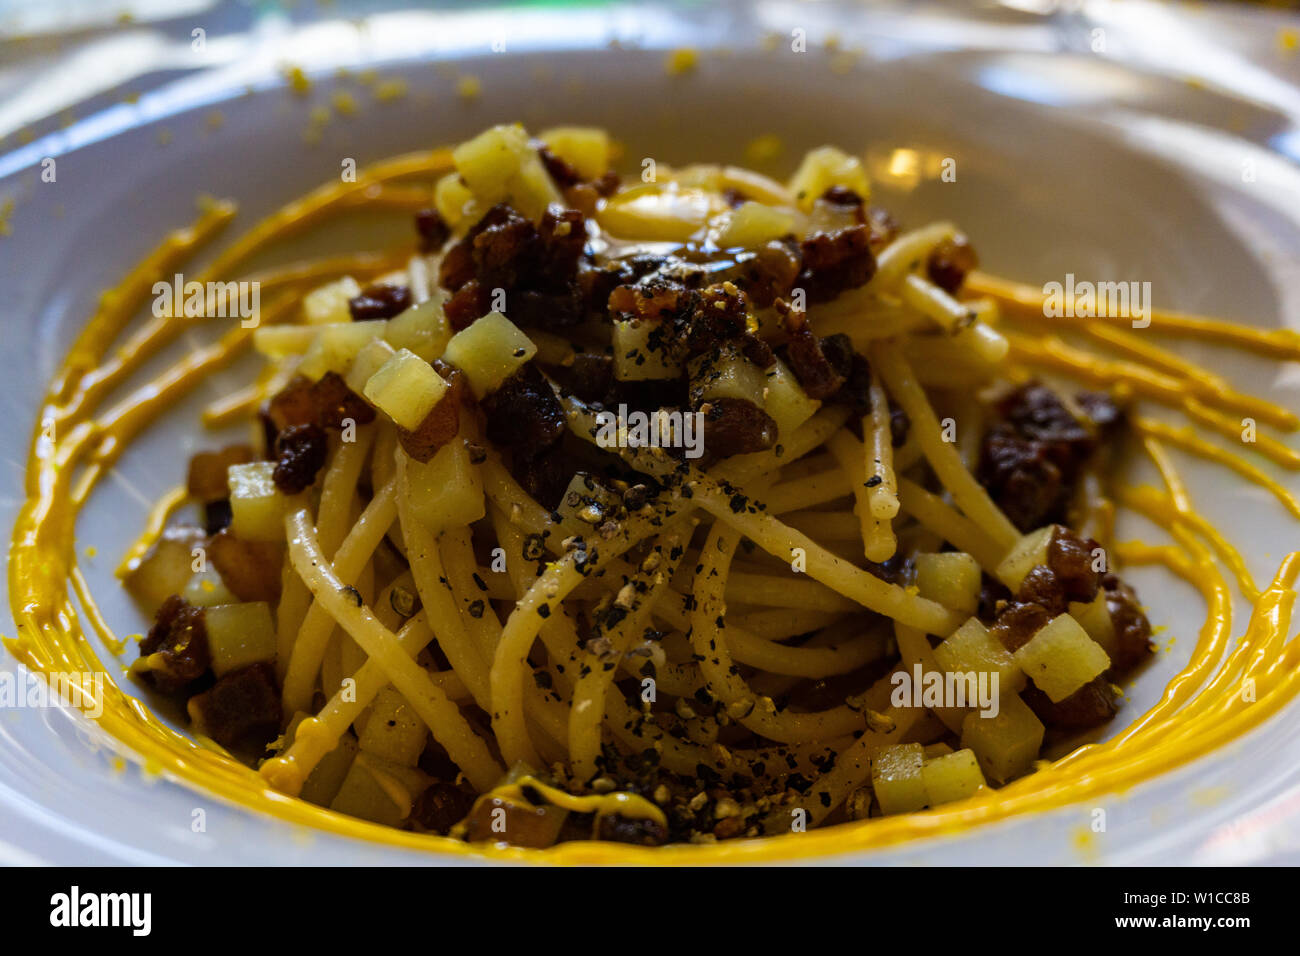 Plat de spaghetti alla carbonara, recette typiquement italien de pâtes avec guanciale, œuf fromage pecorino romano ad Banque D'Images